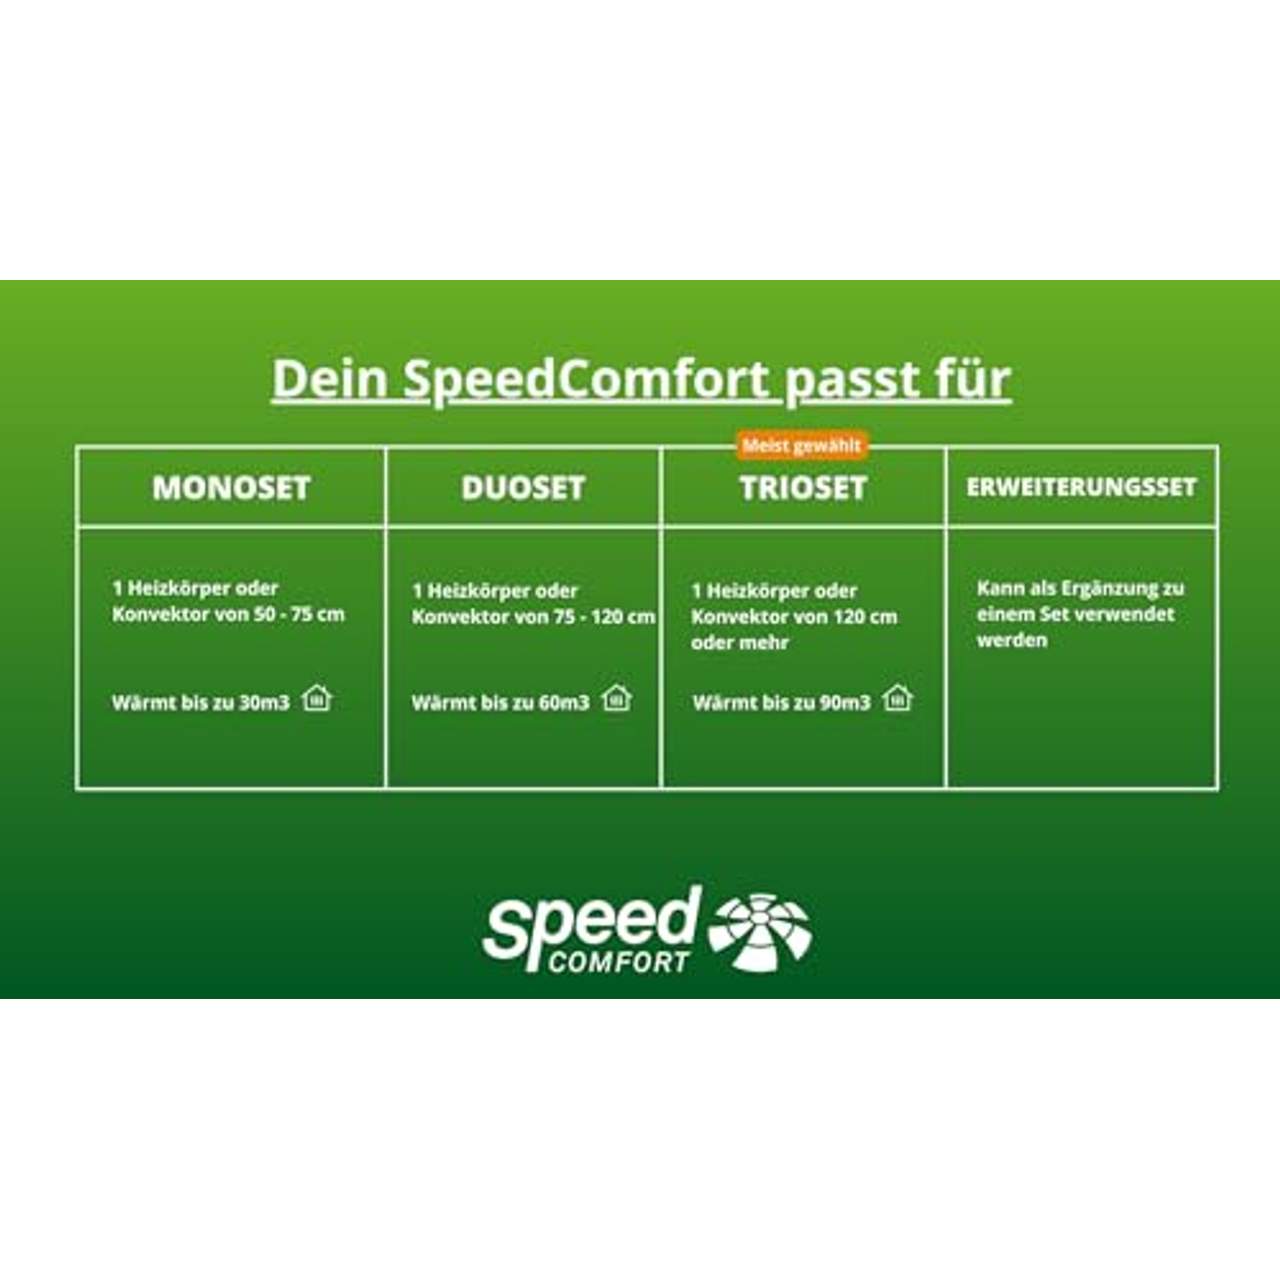 SpeedComfort 2.0 Mono-Set